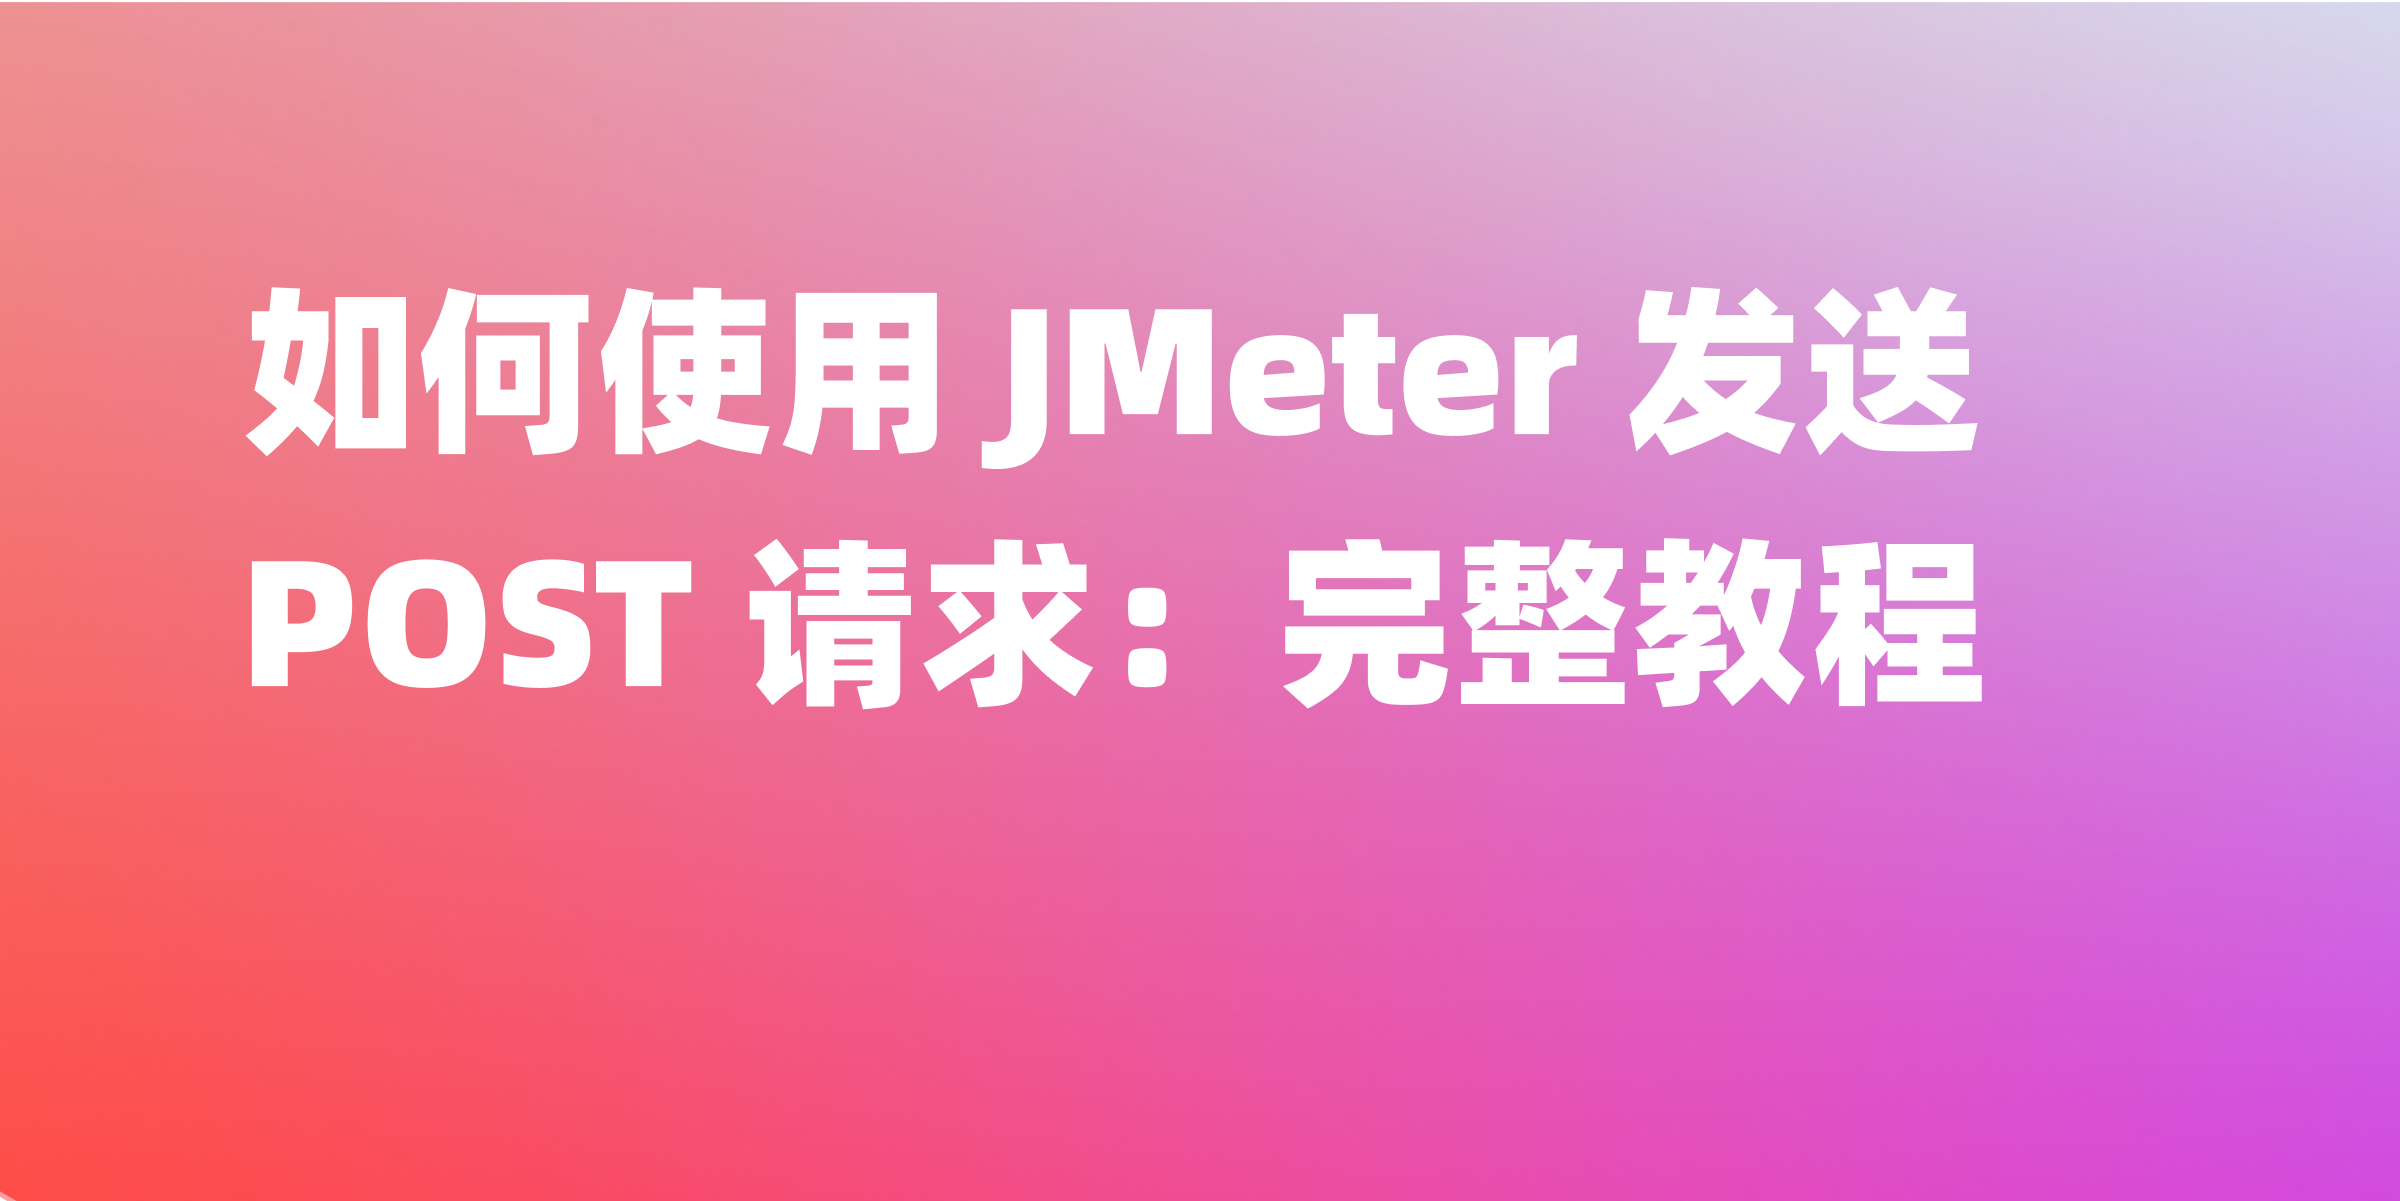 使用 JMeter 进行 POST 请求测试的步骤